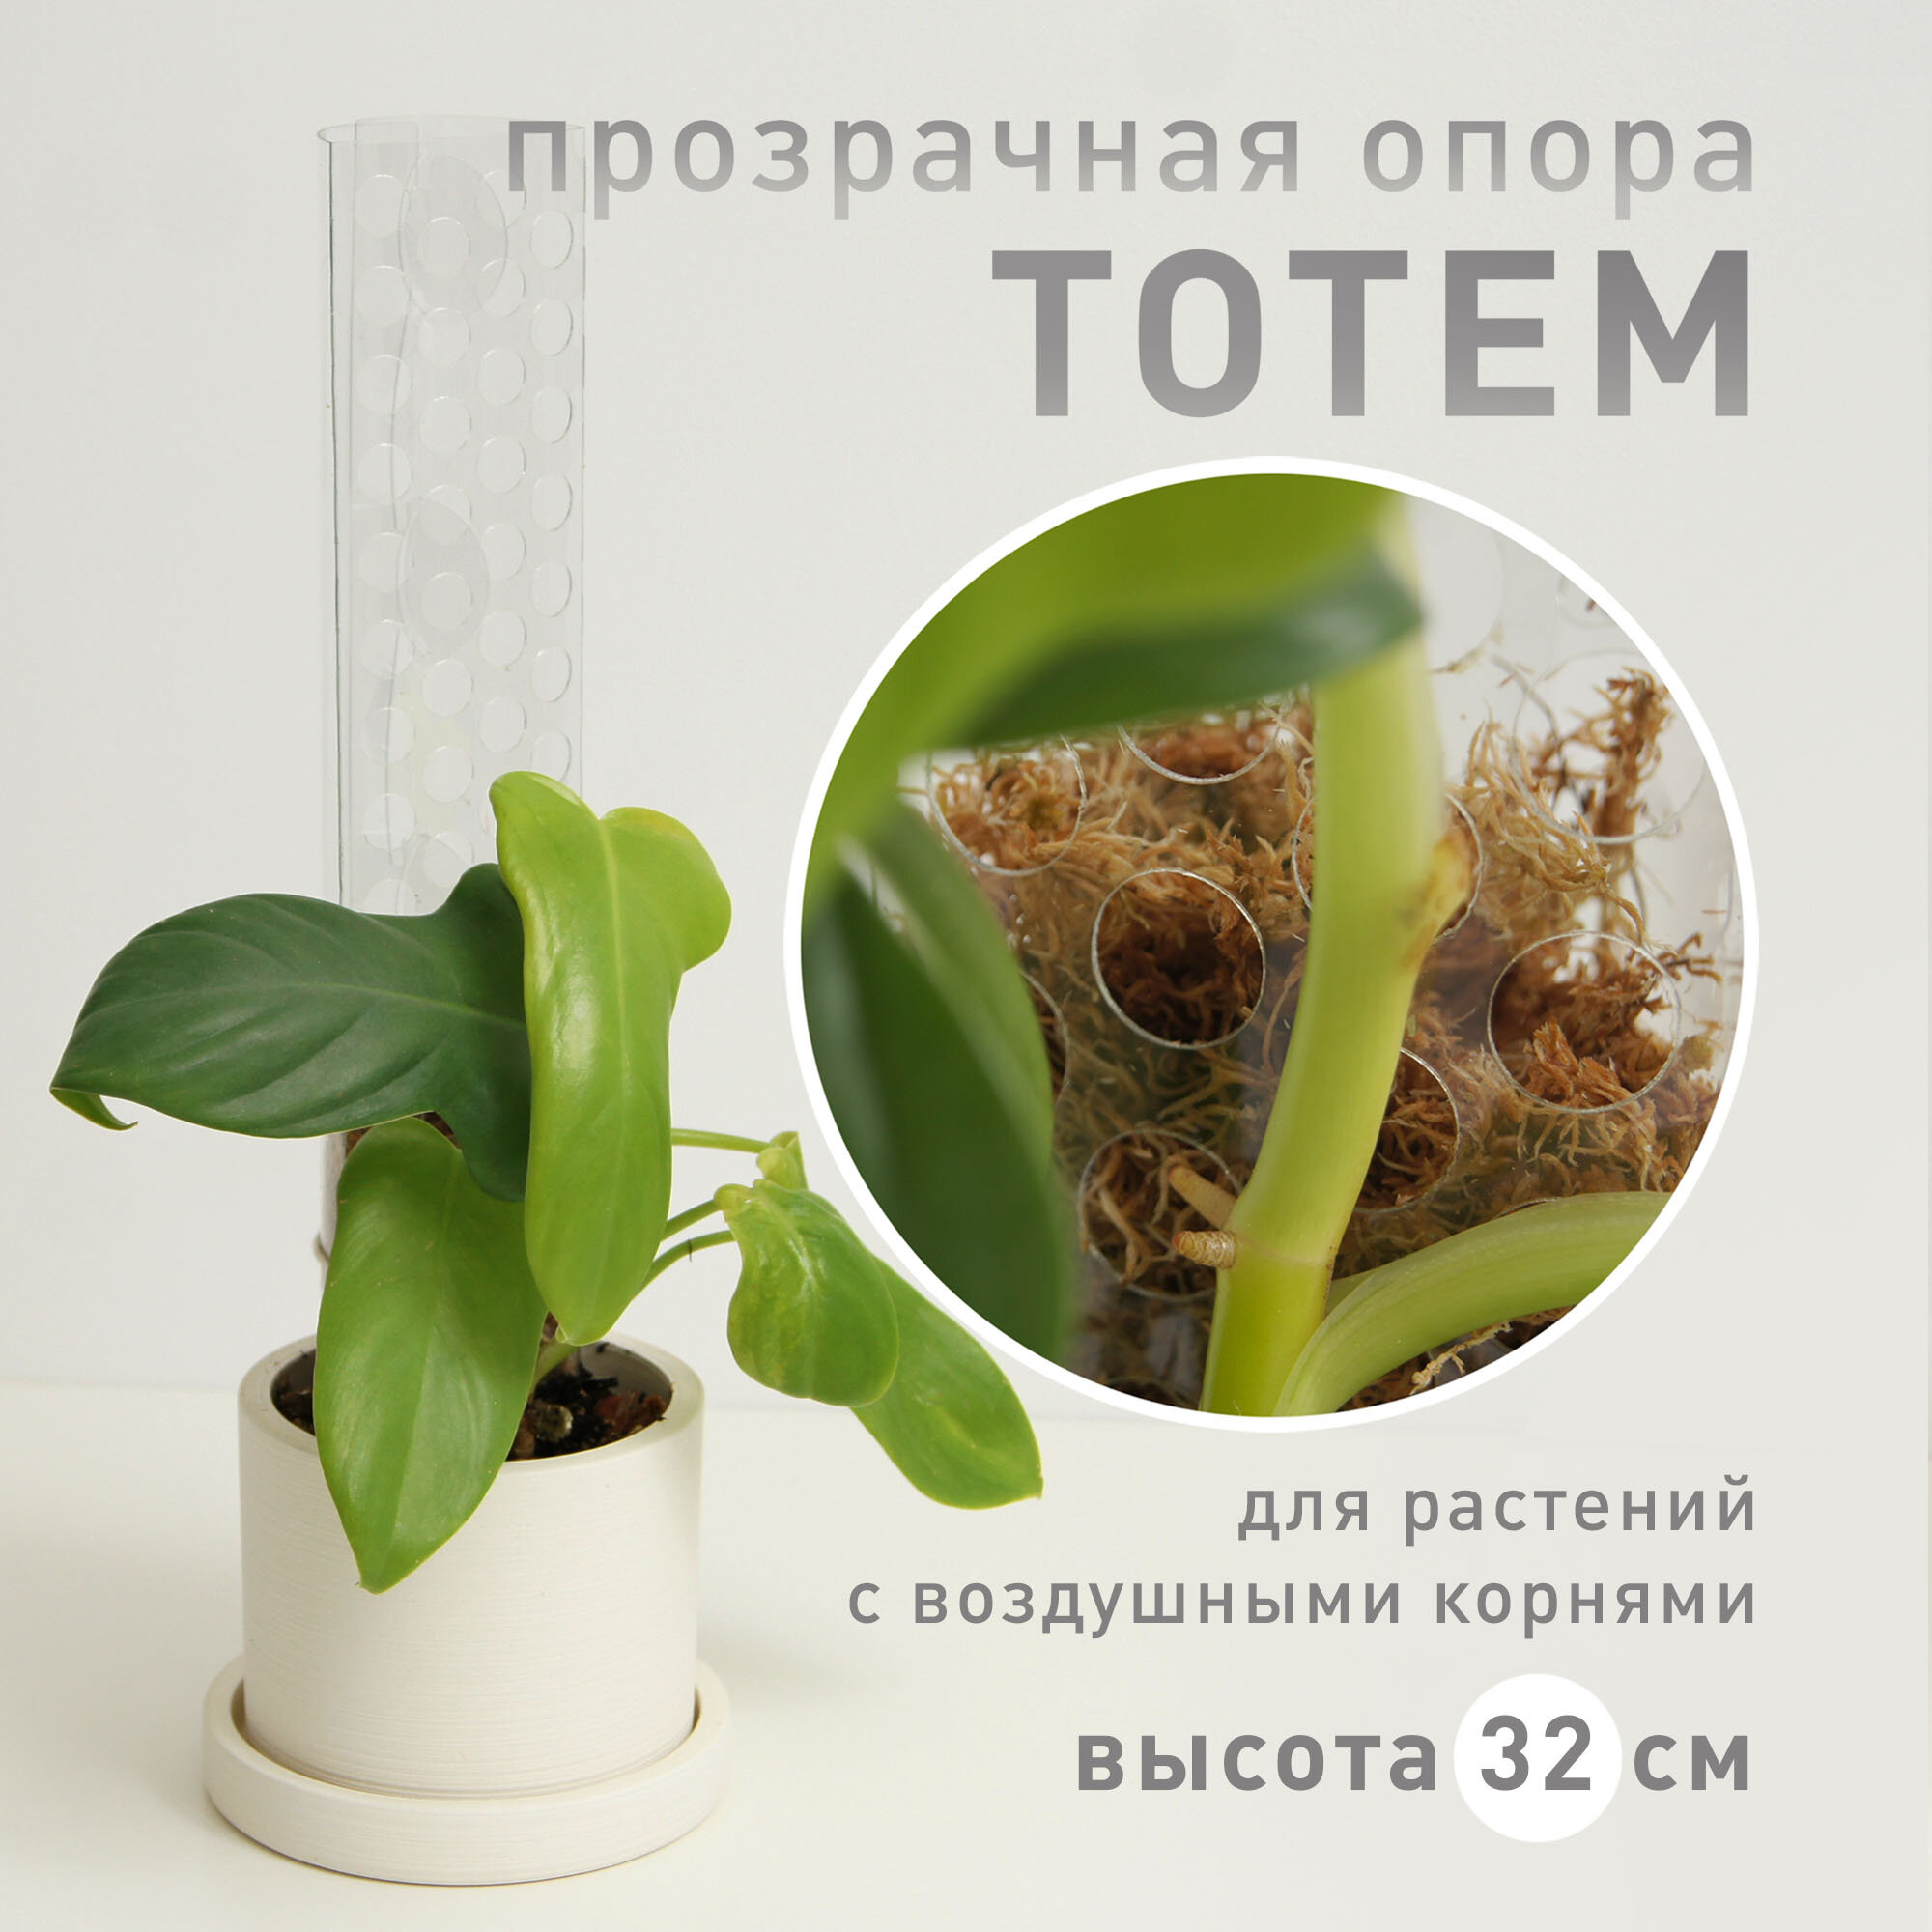 Опора для растений Plant*Secrets тотем высота 32 см